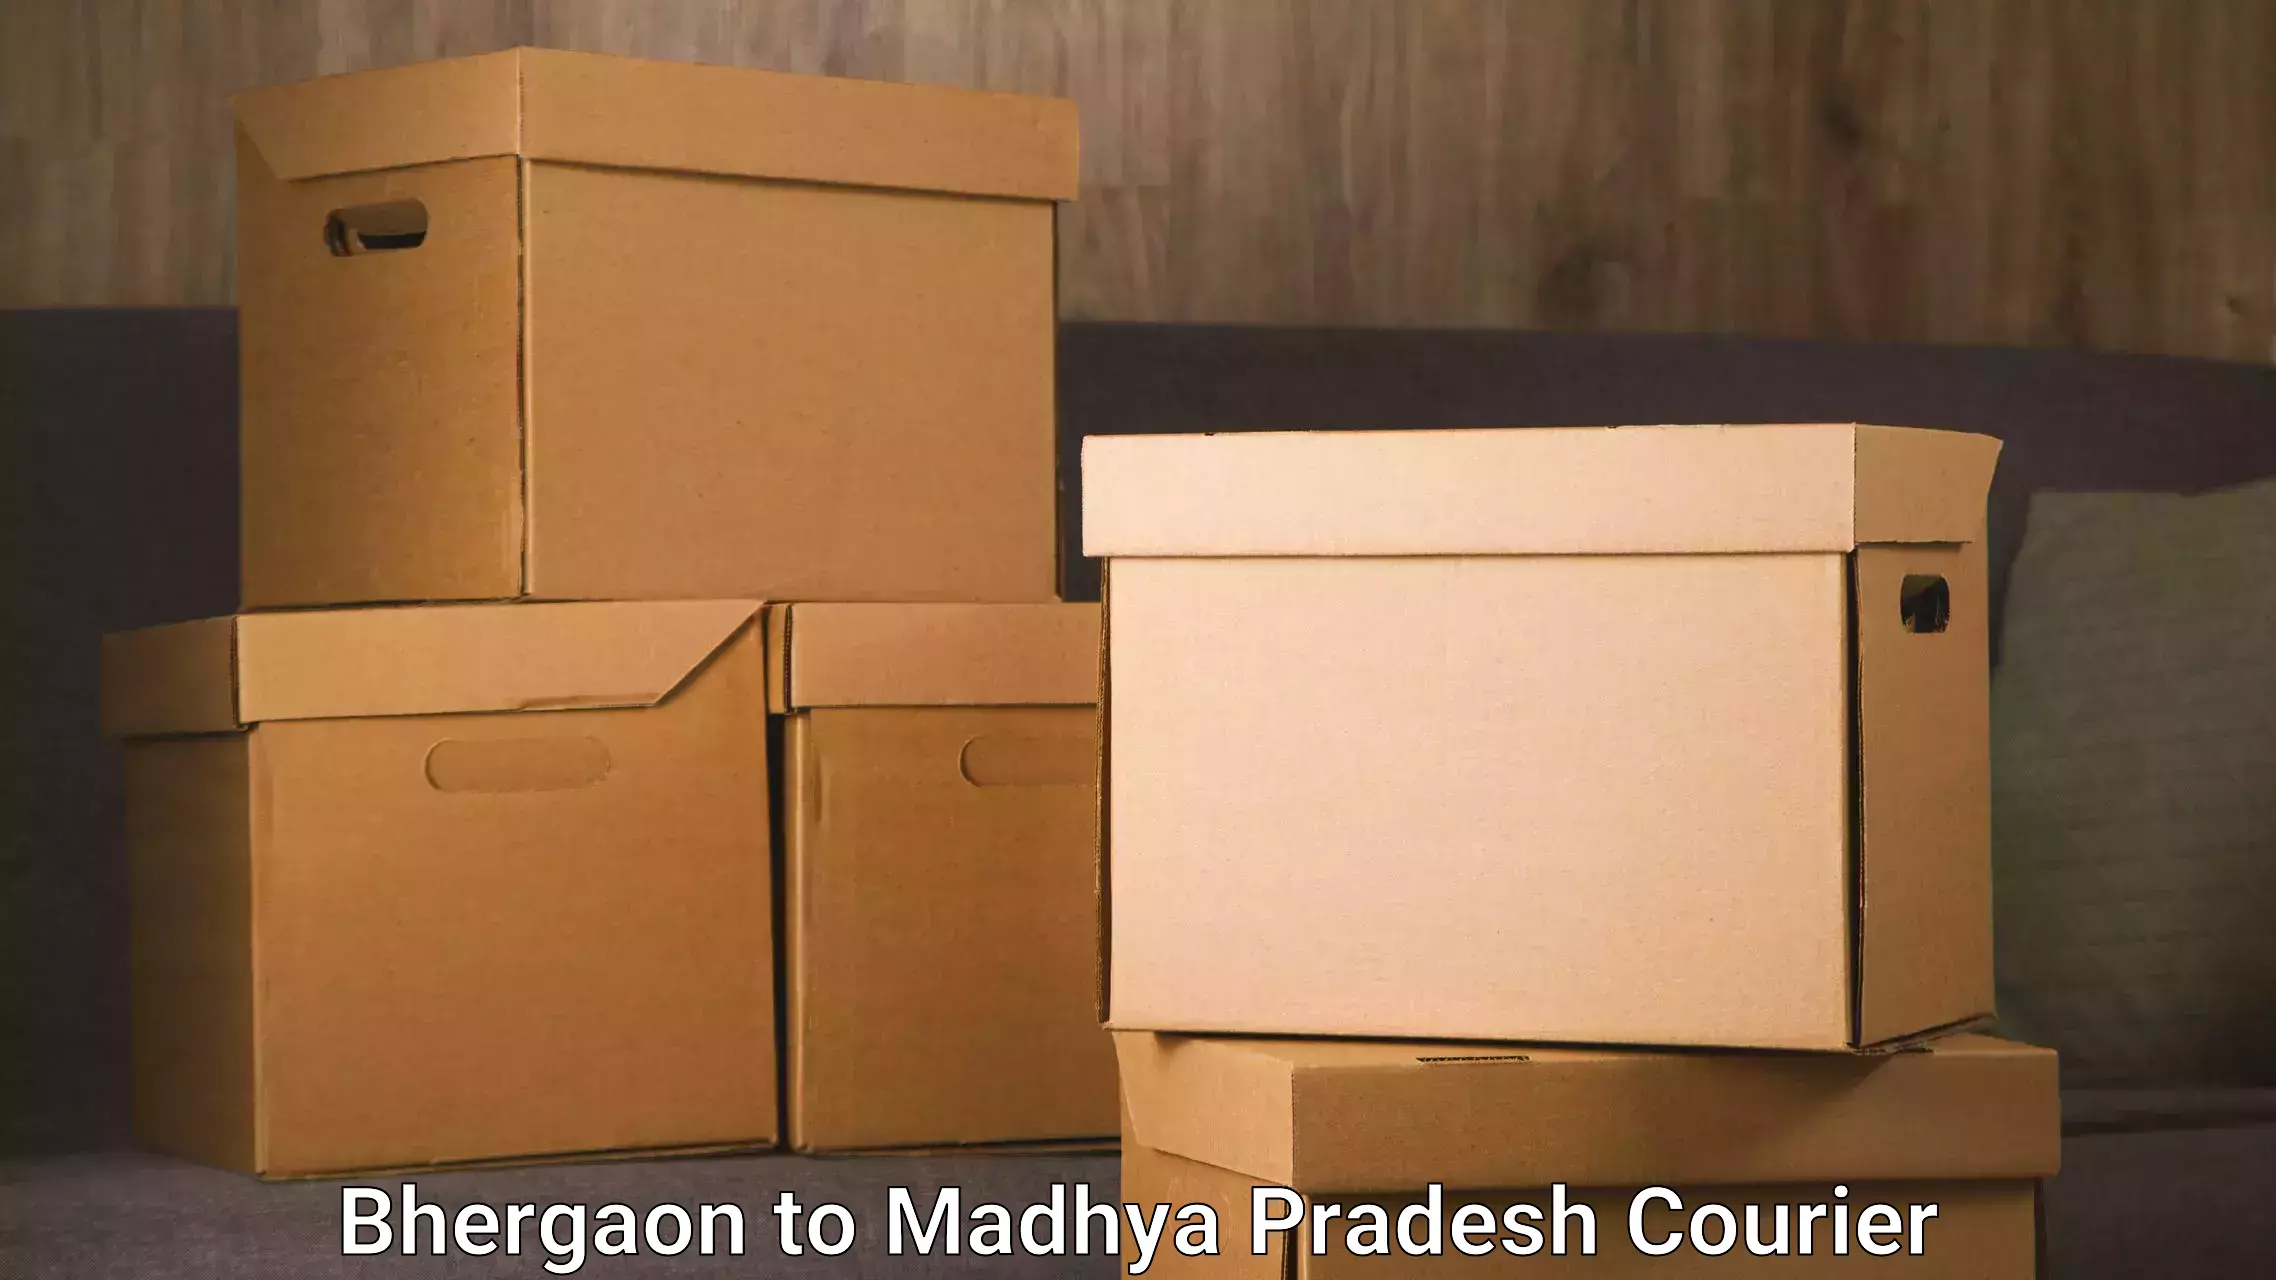 High-speed parcel service Bhergaon to Shujalpur